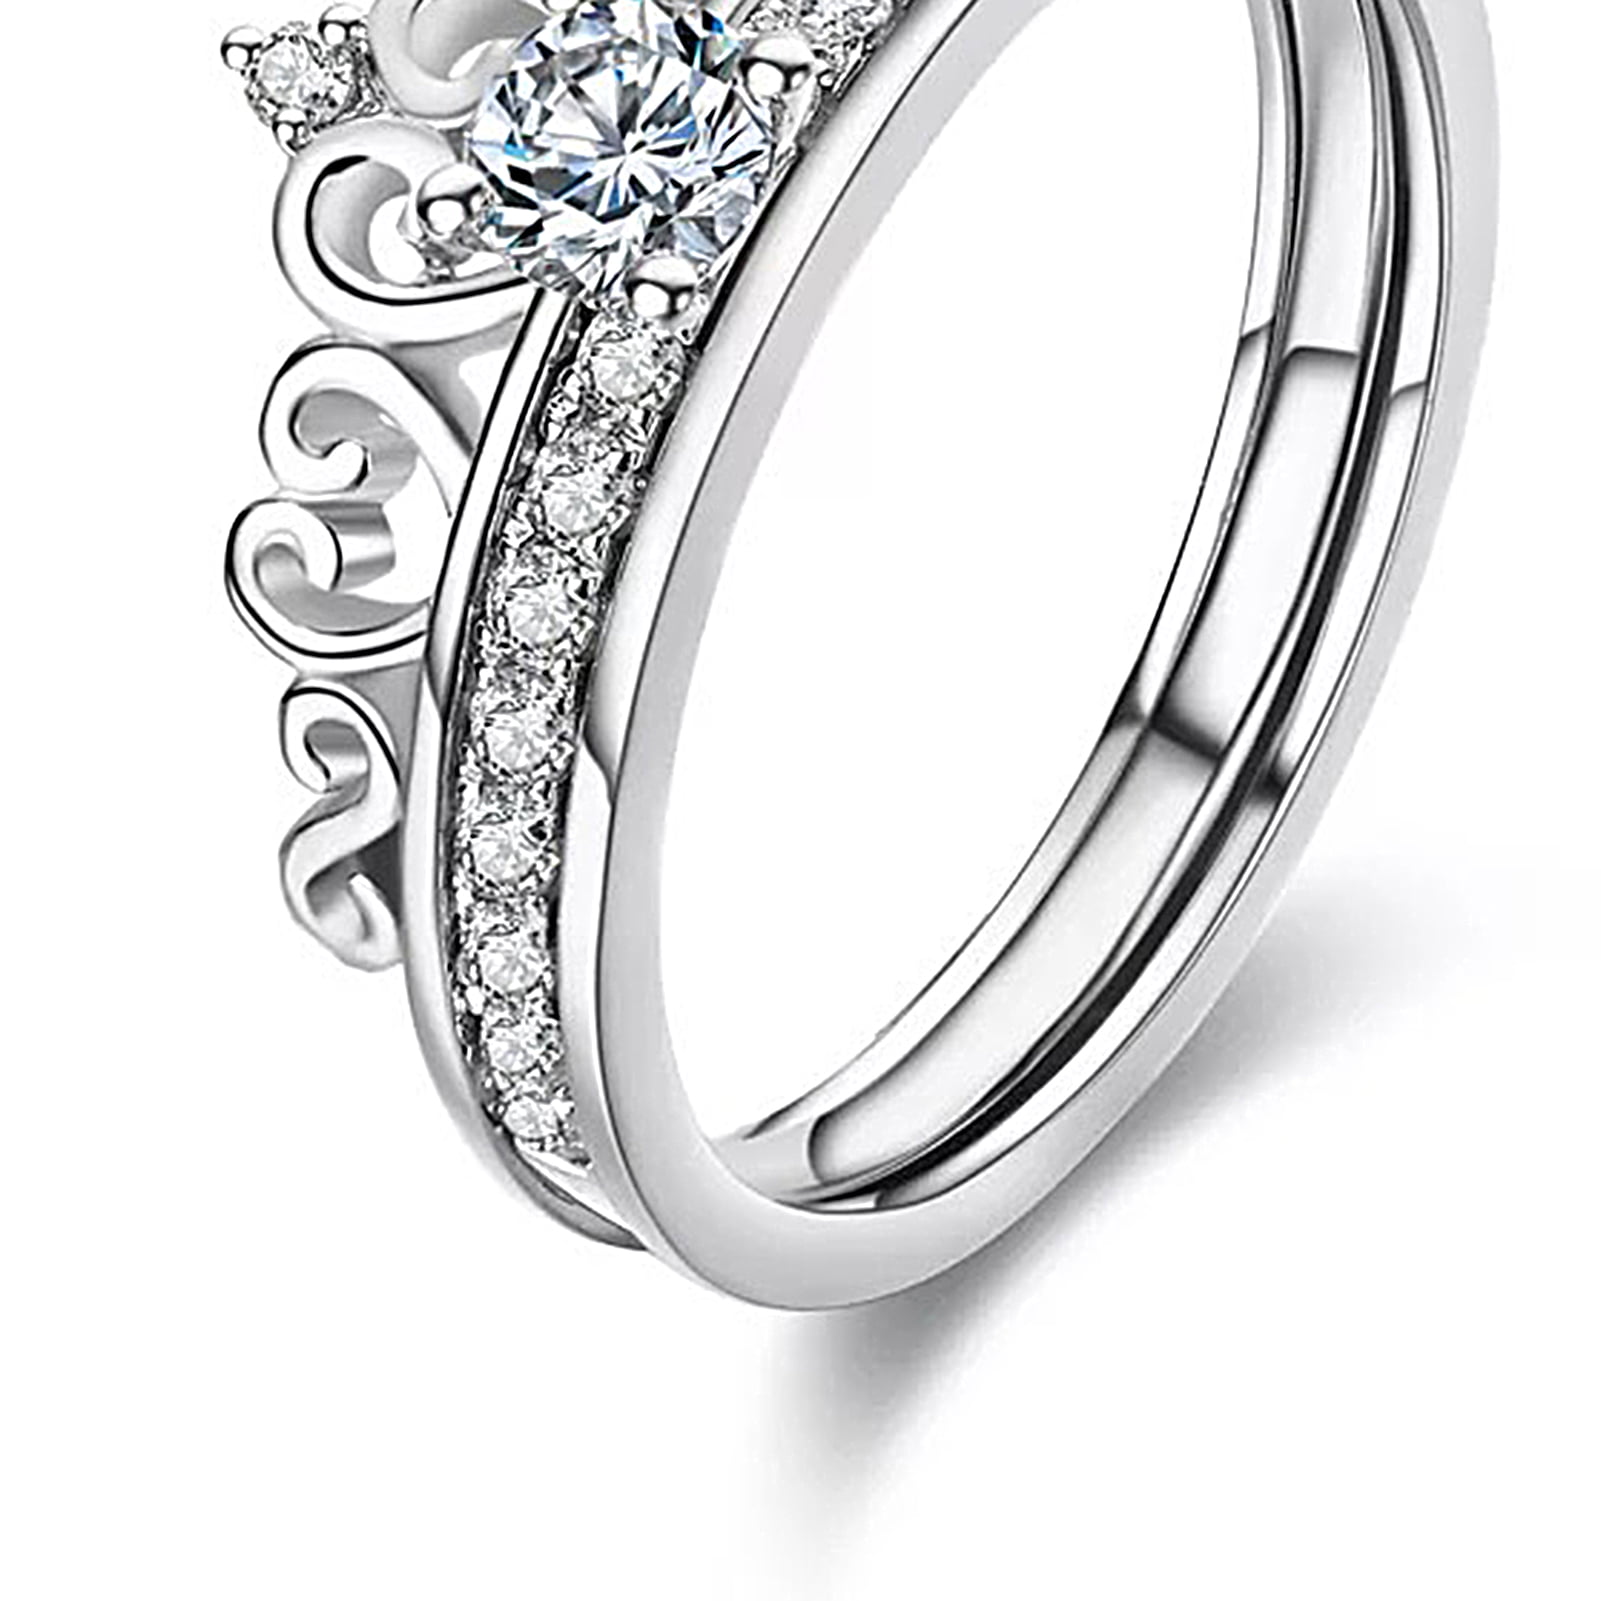 Buy Queen Ring 2 Online | Tulsi Jewellers - JewelFlix